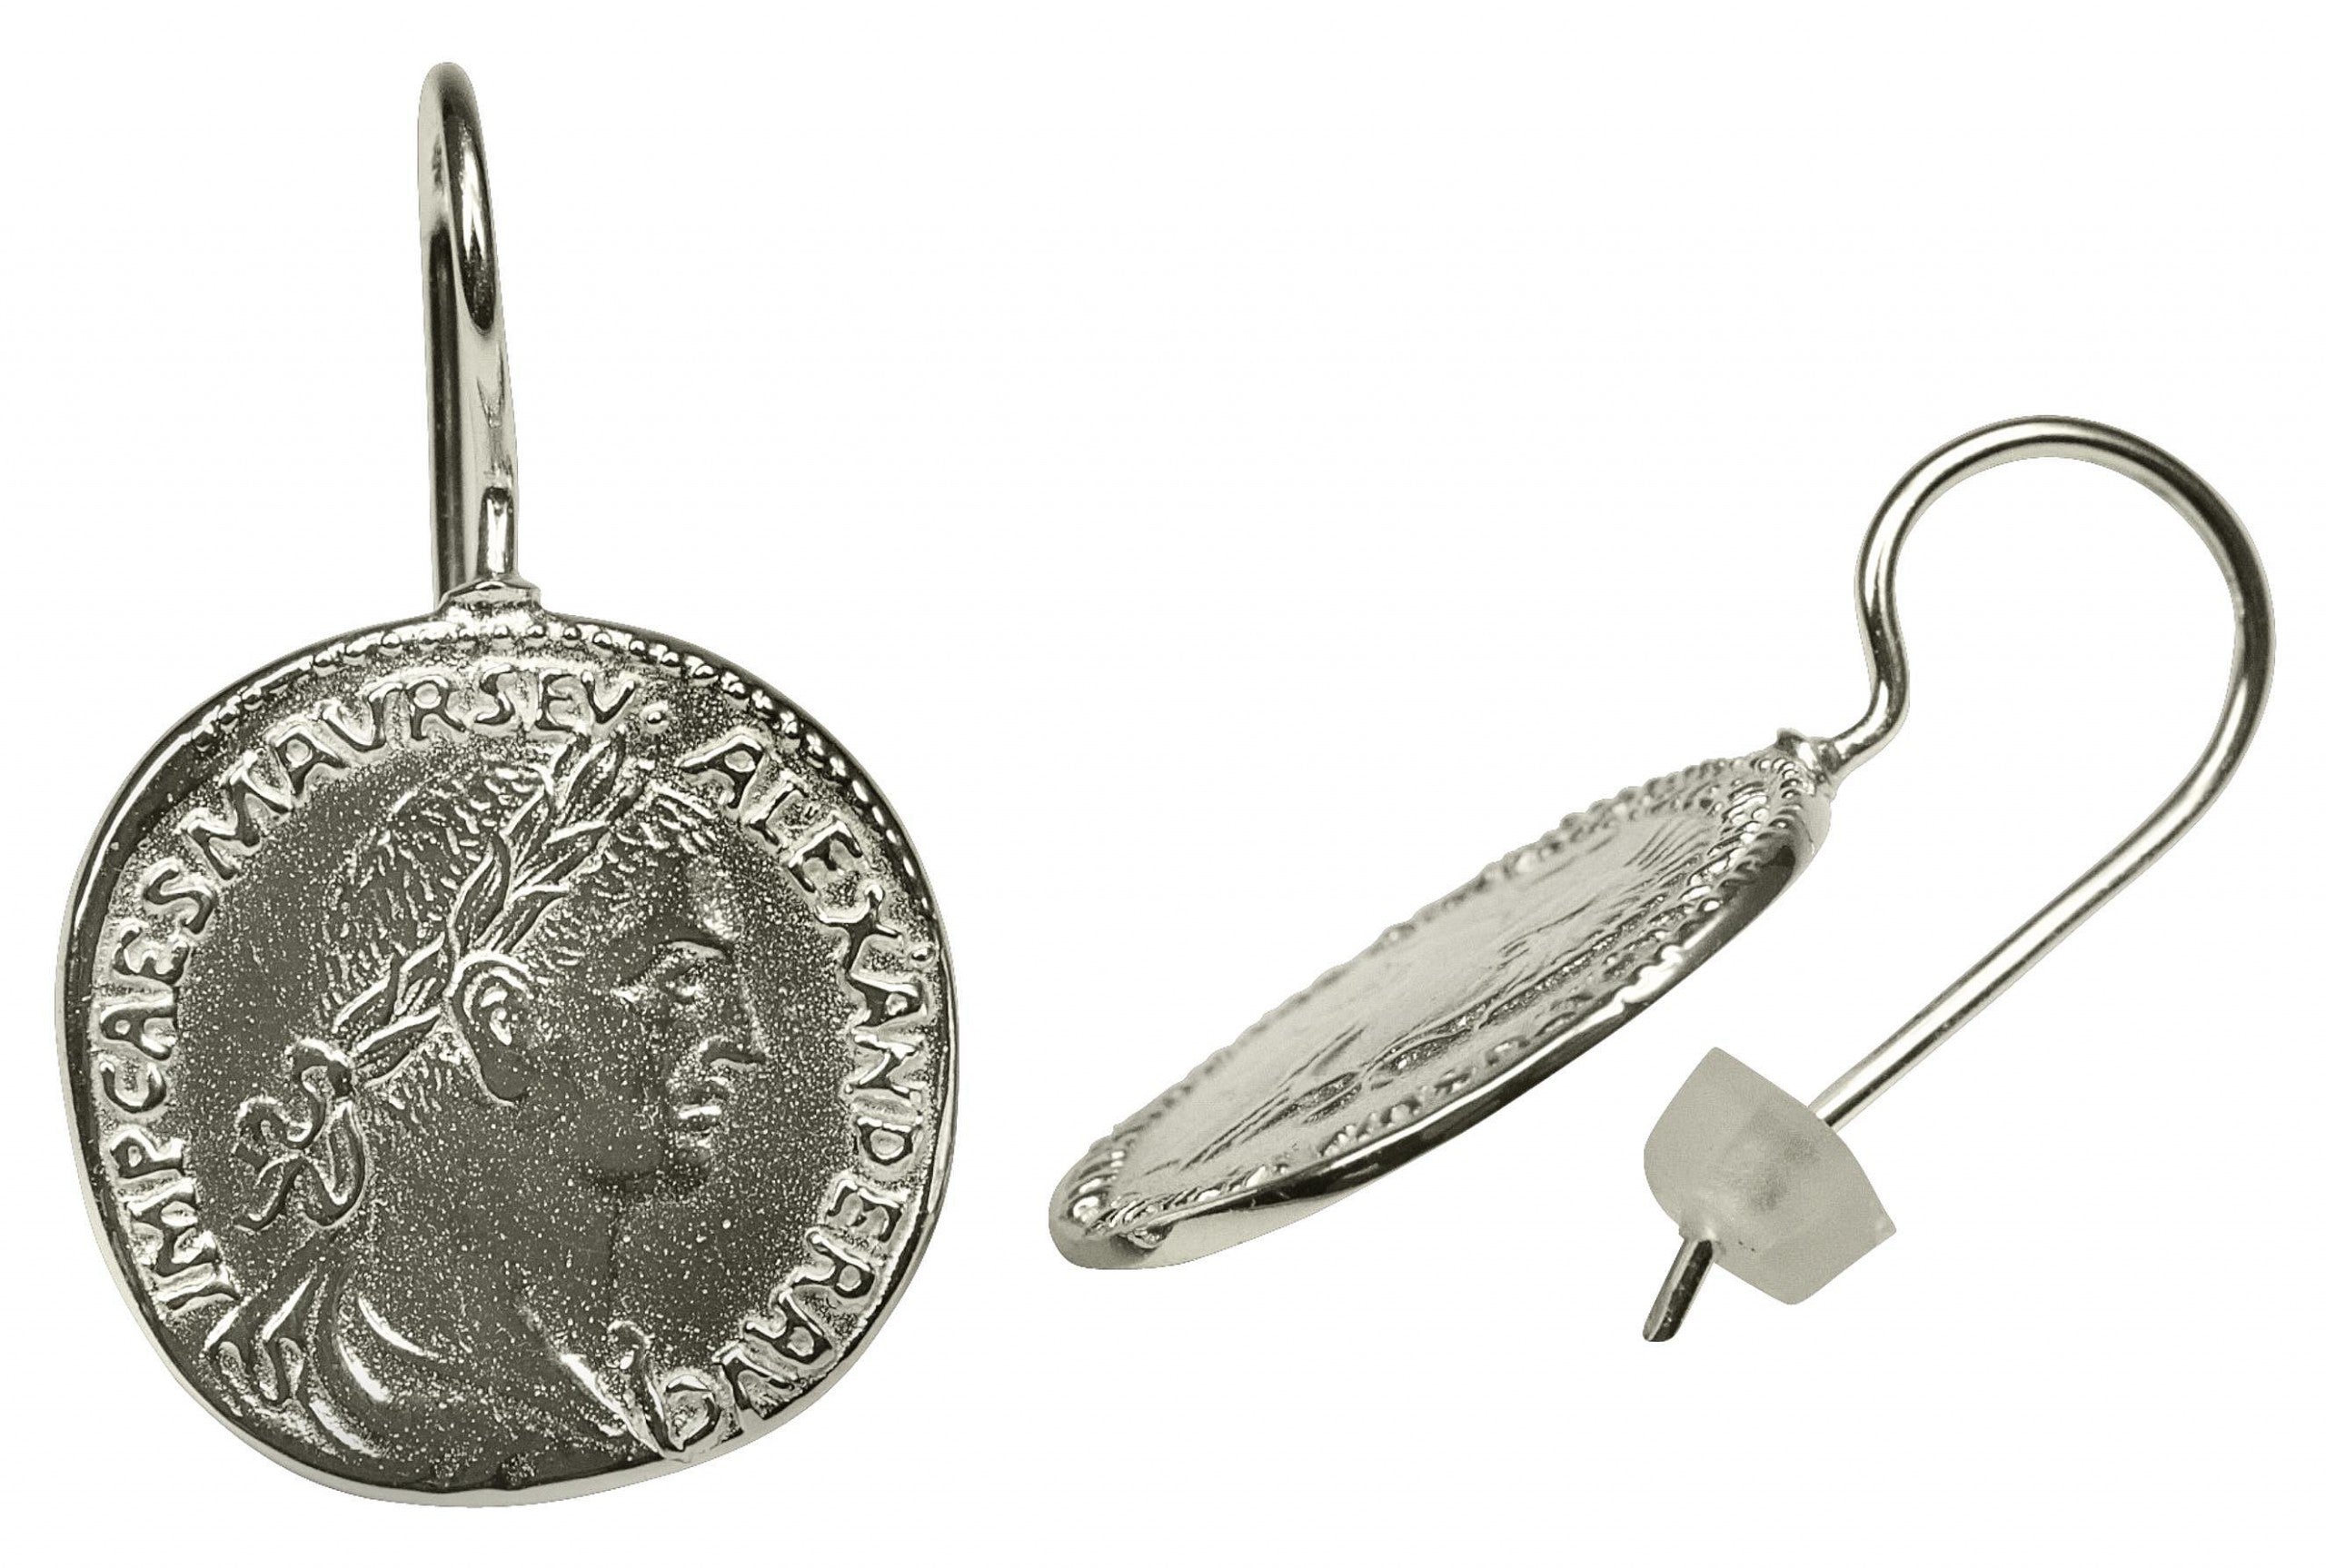 Ohrhänger in Silber mit römischer Prägung und römischem Münzendesign.